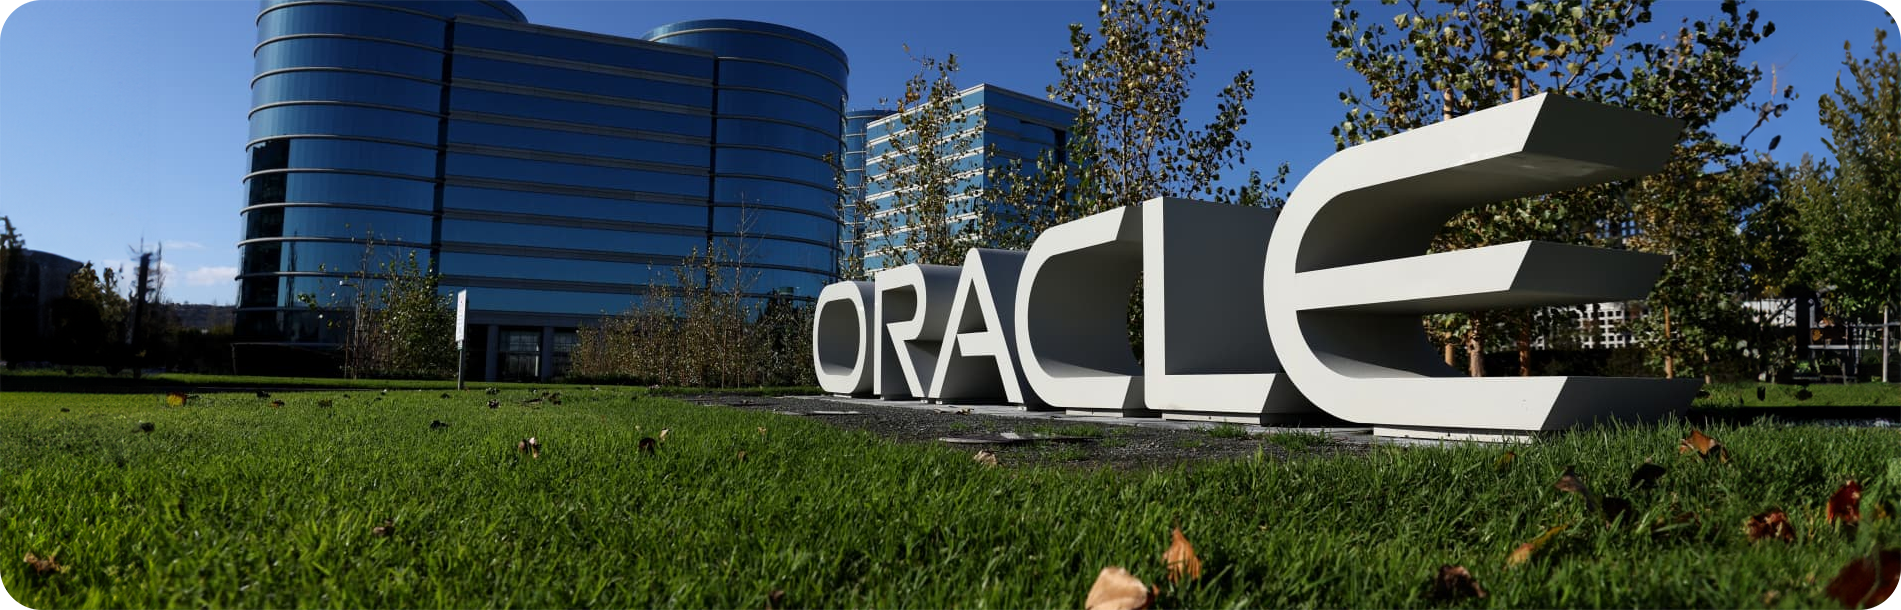 Fotografia da sede da Oracle com o letreiro do logotipo da Oracle em destaque